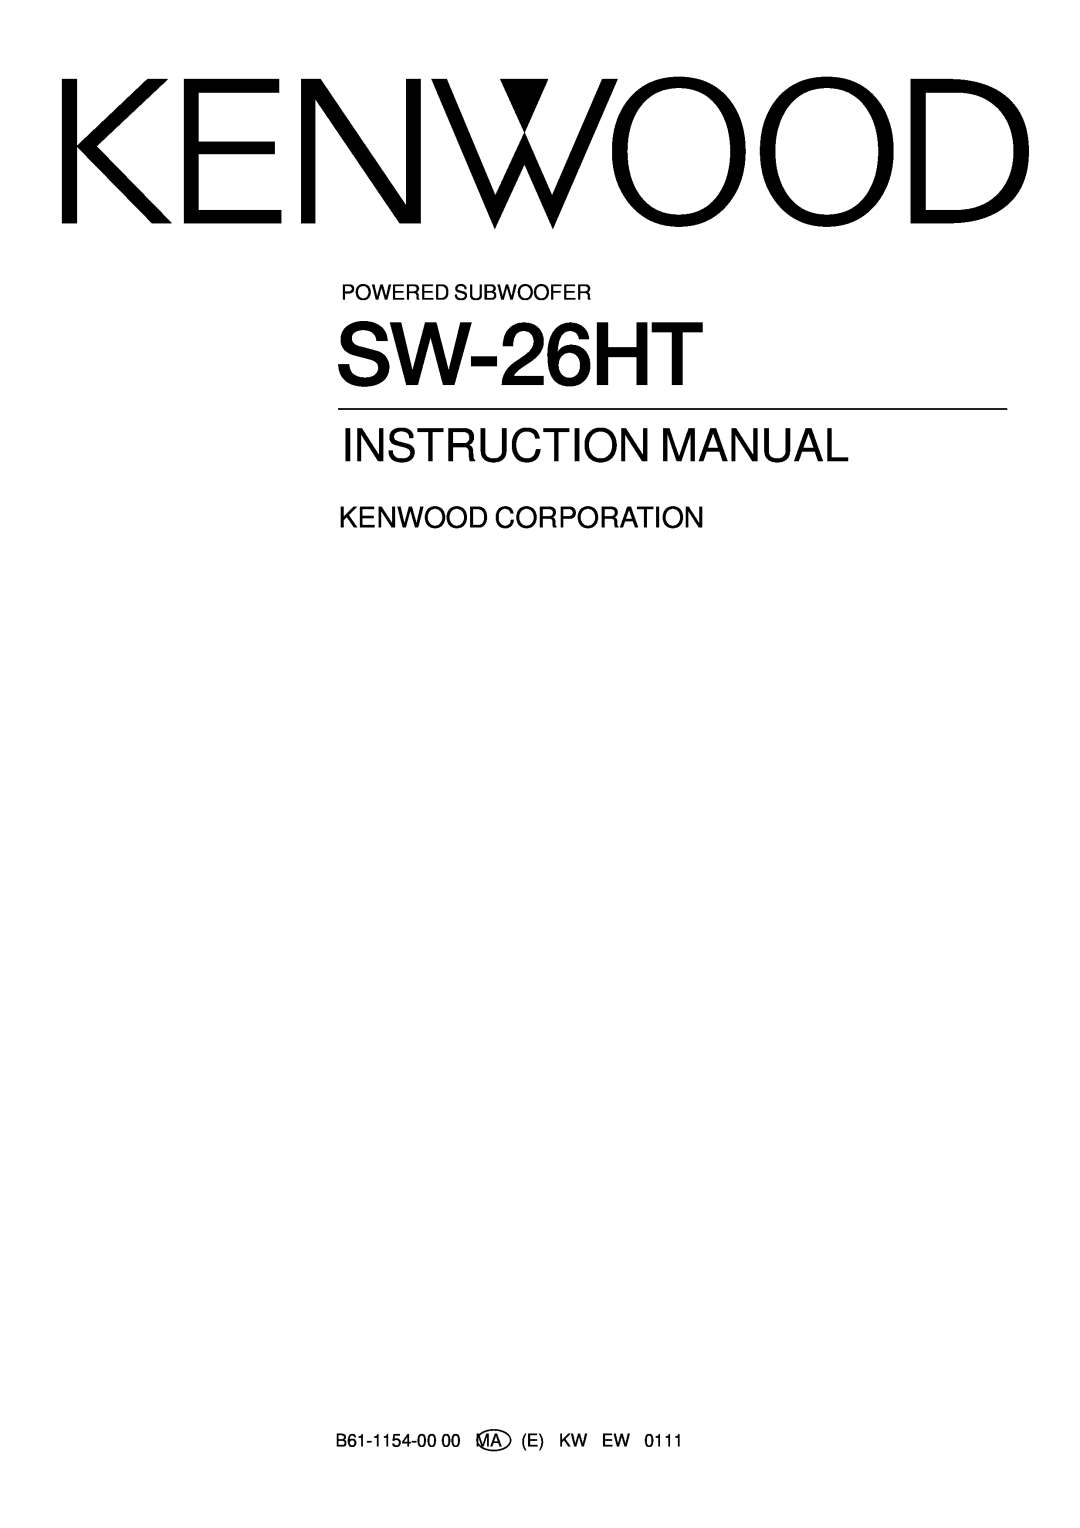 Kenwood SW-26HT instruction manual Kenwood Corporation, Powered Subwoofer, B61-1154-0000 MA E KW EW 